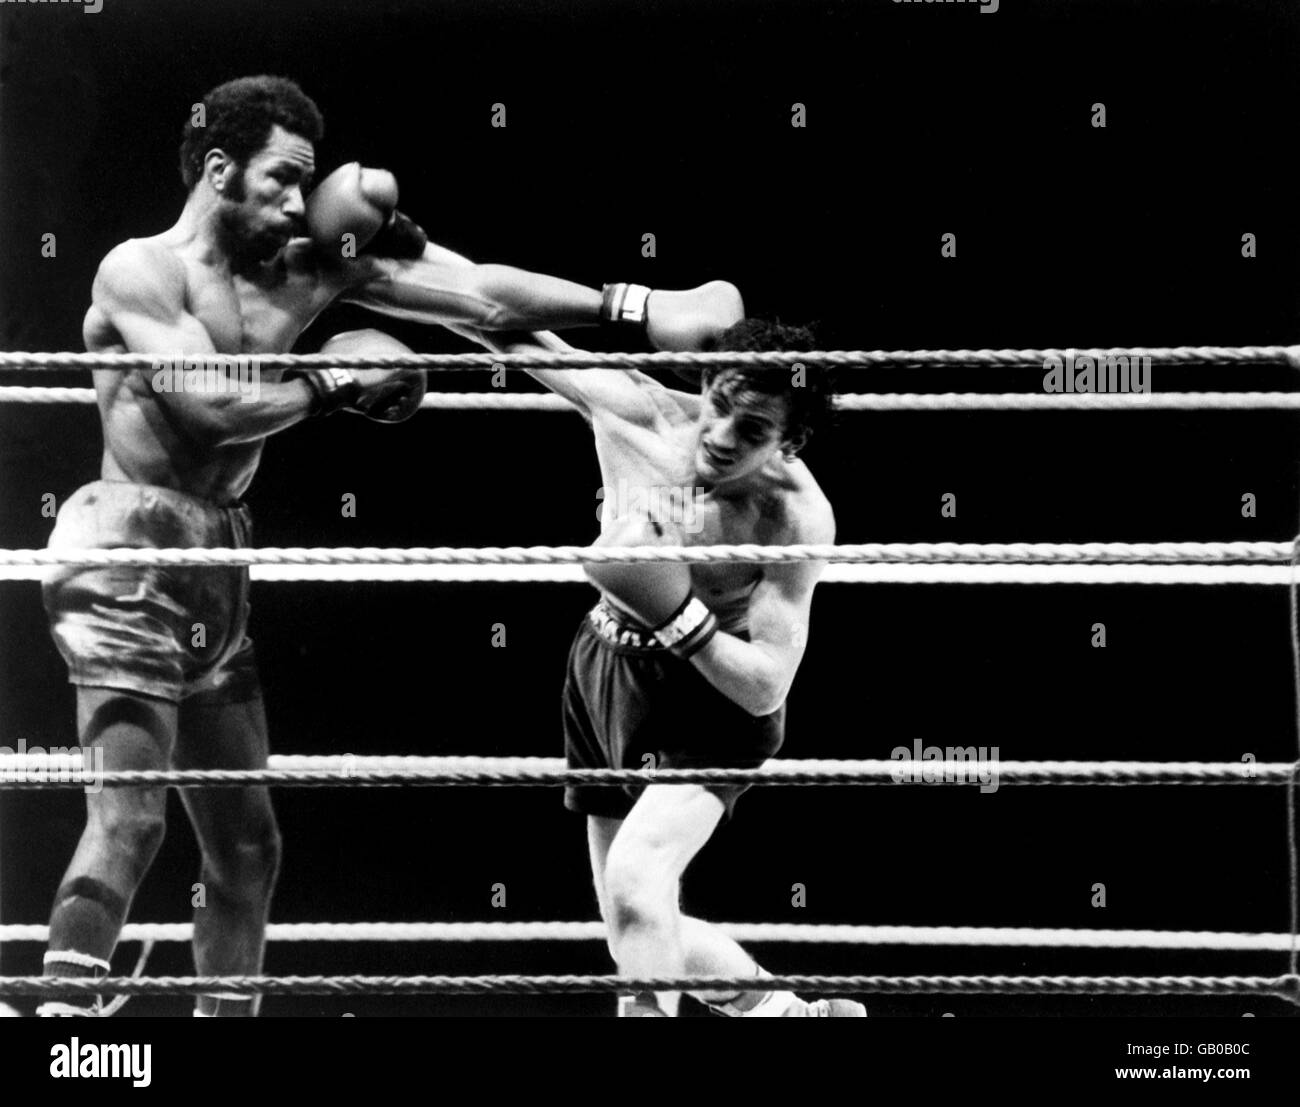 Irlands Barry McGuigan (r) und Panamas Eusebio Pedroza (l) handeln Schläge in ihrem WBA-Titelkampf Stockfoto